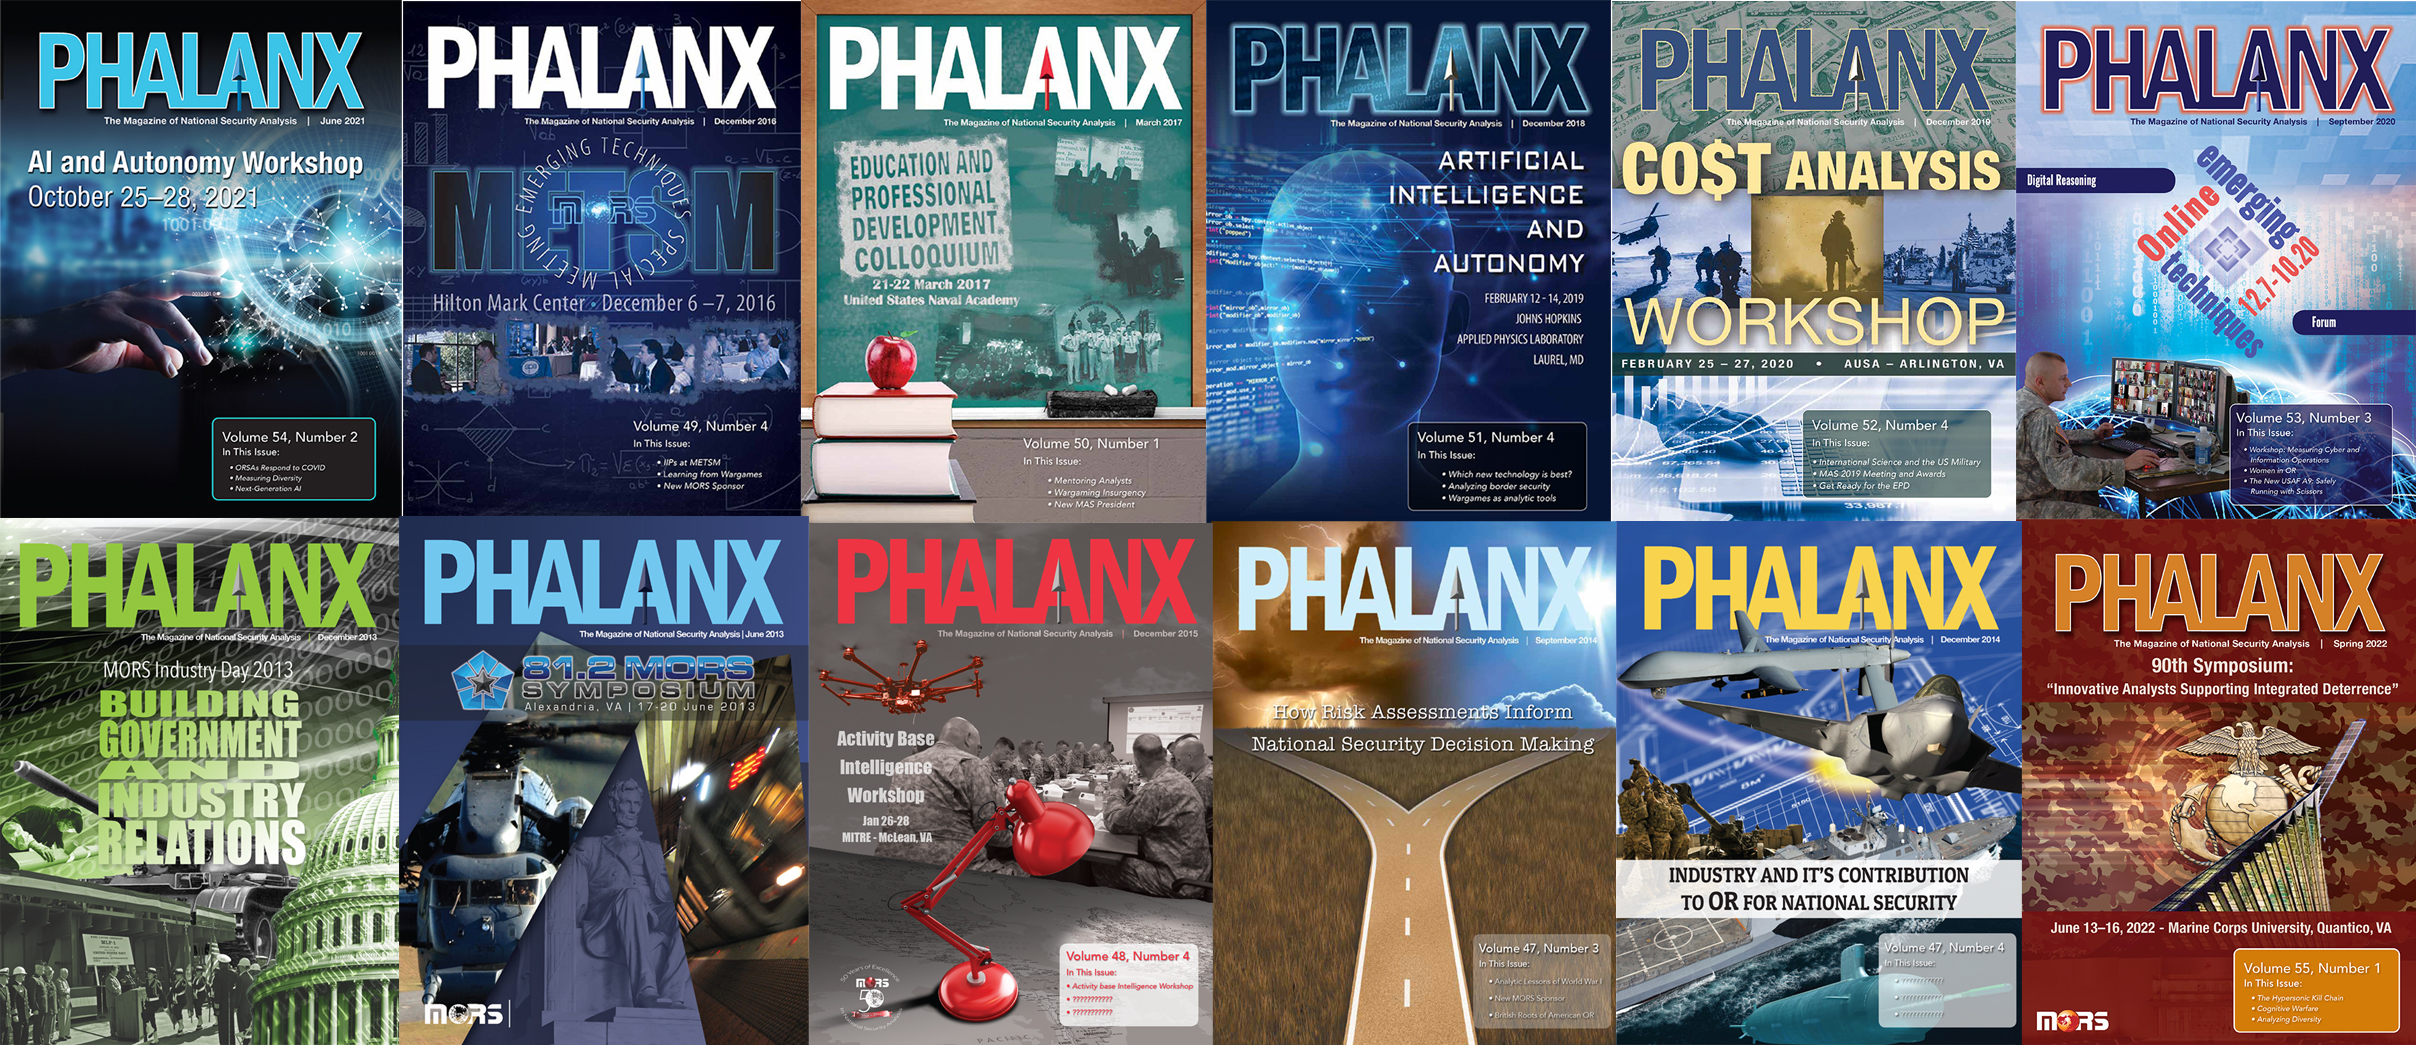 PHALANX Magazine Publication Layout